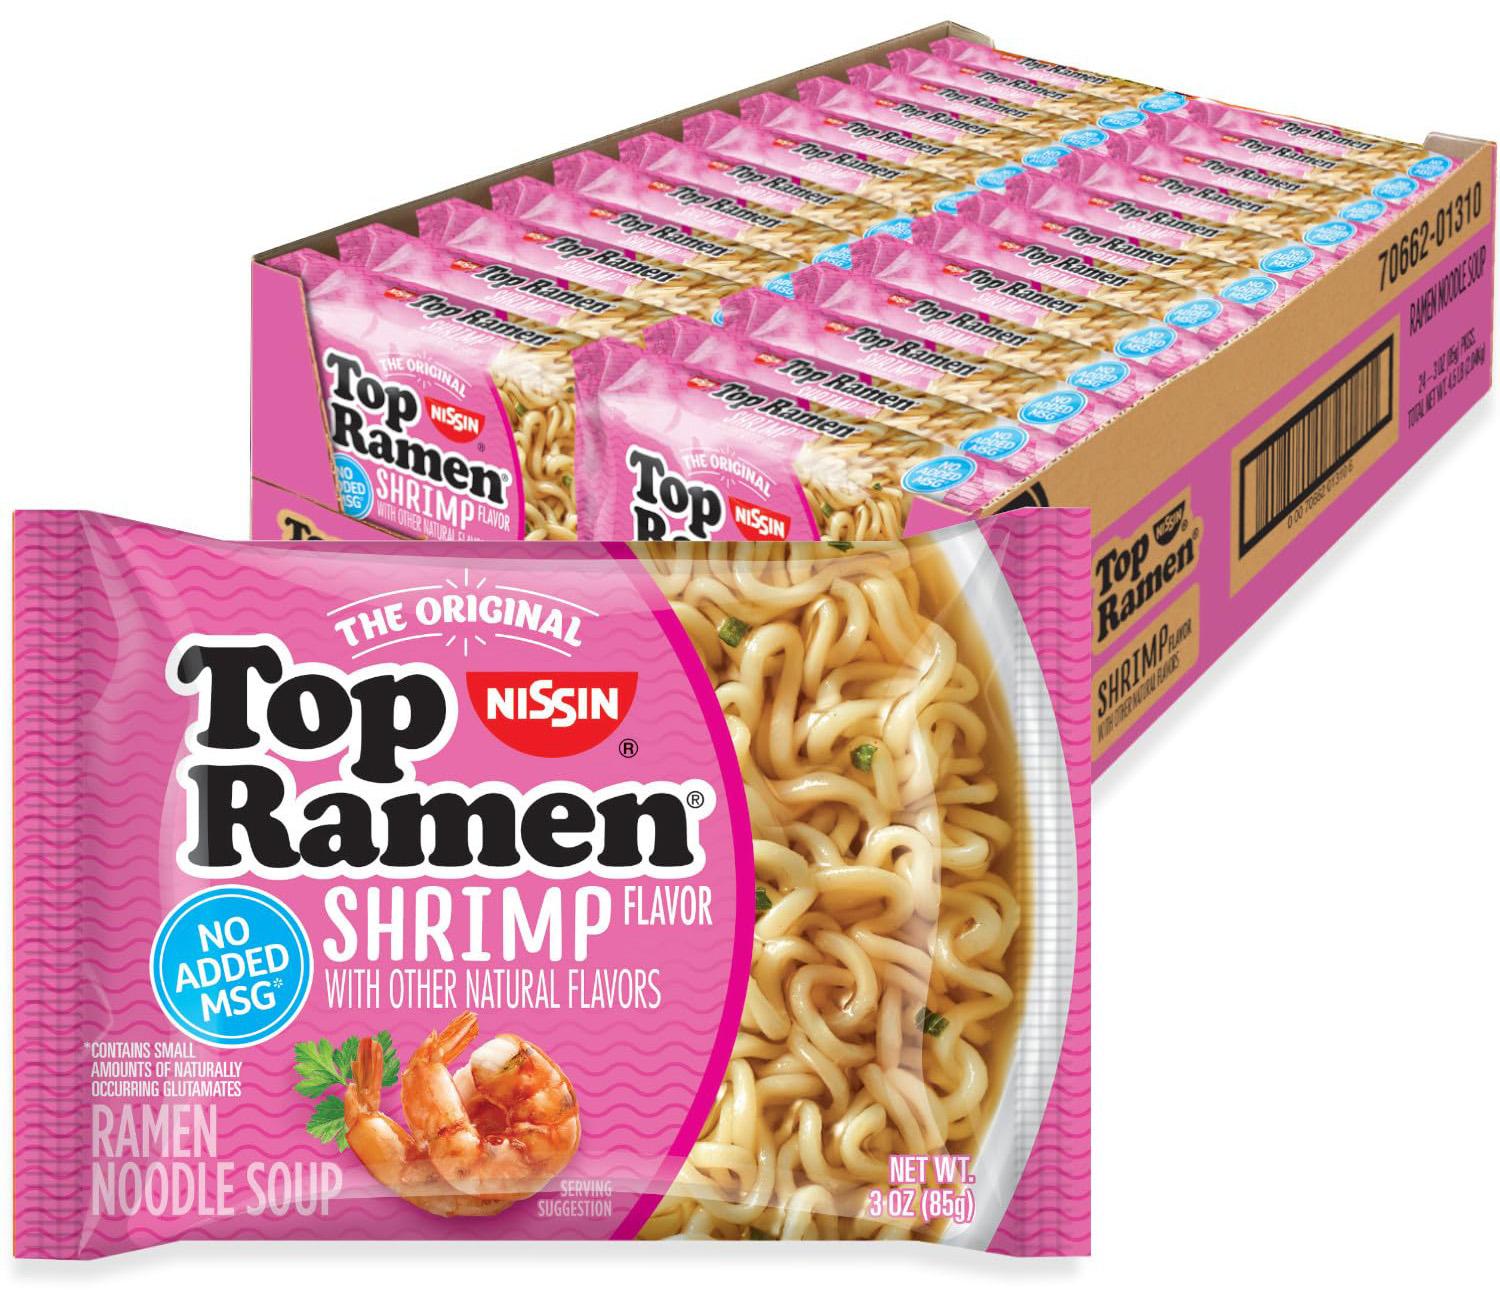 Nissin Top Ramen Instant Noodles 24-Pack for $7.56